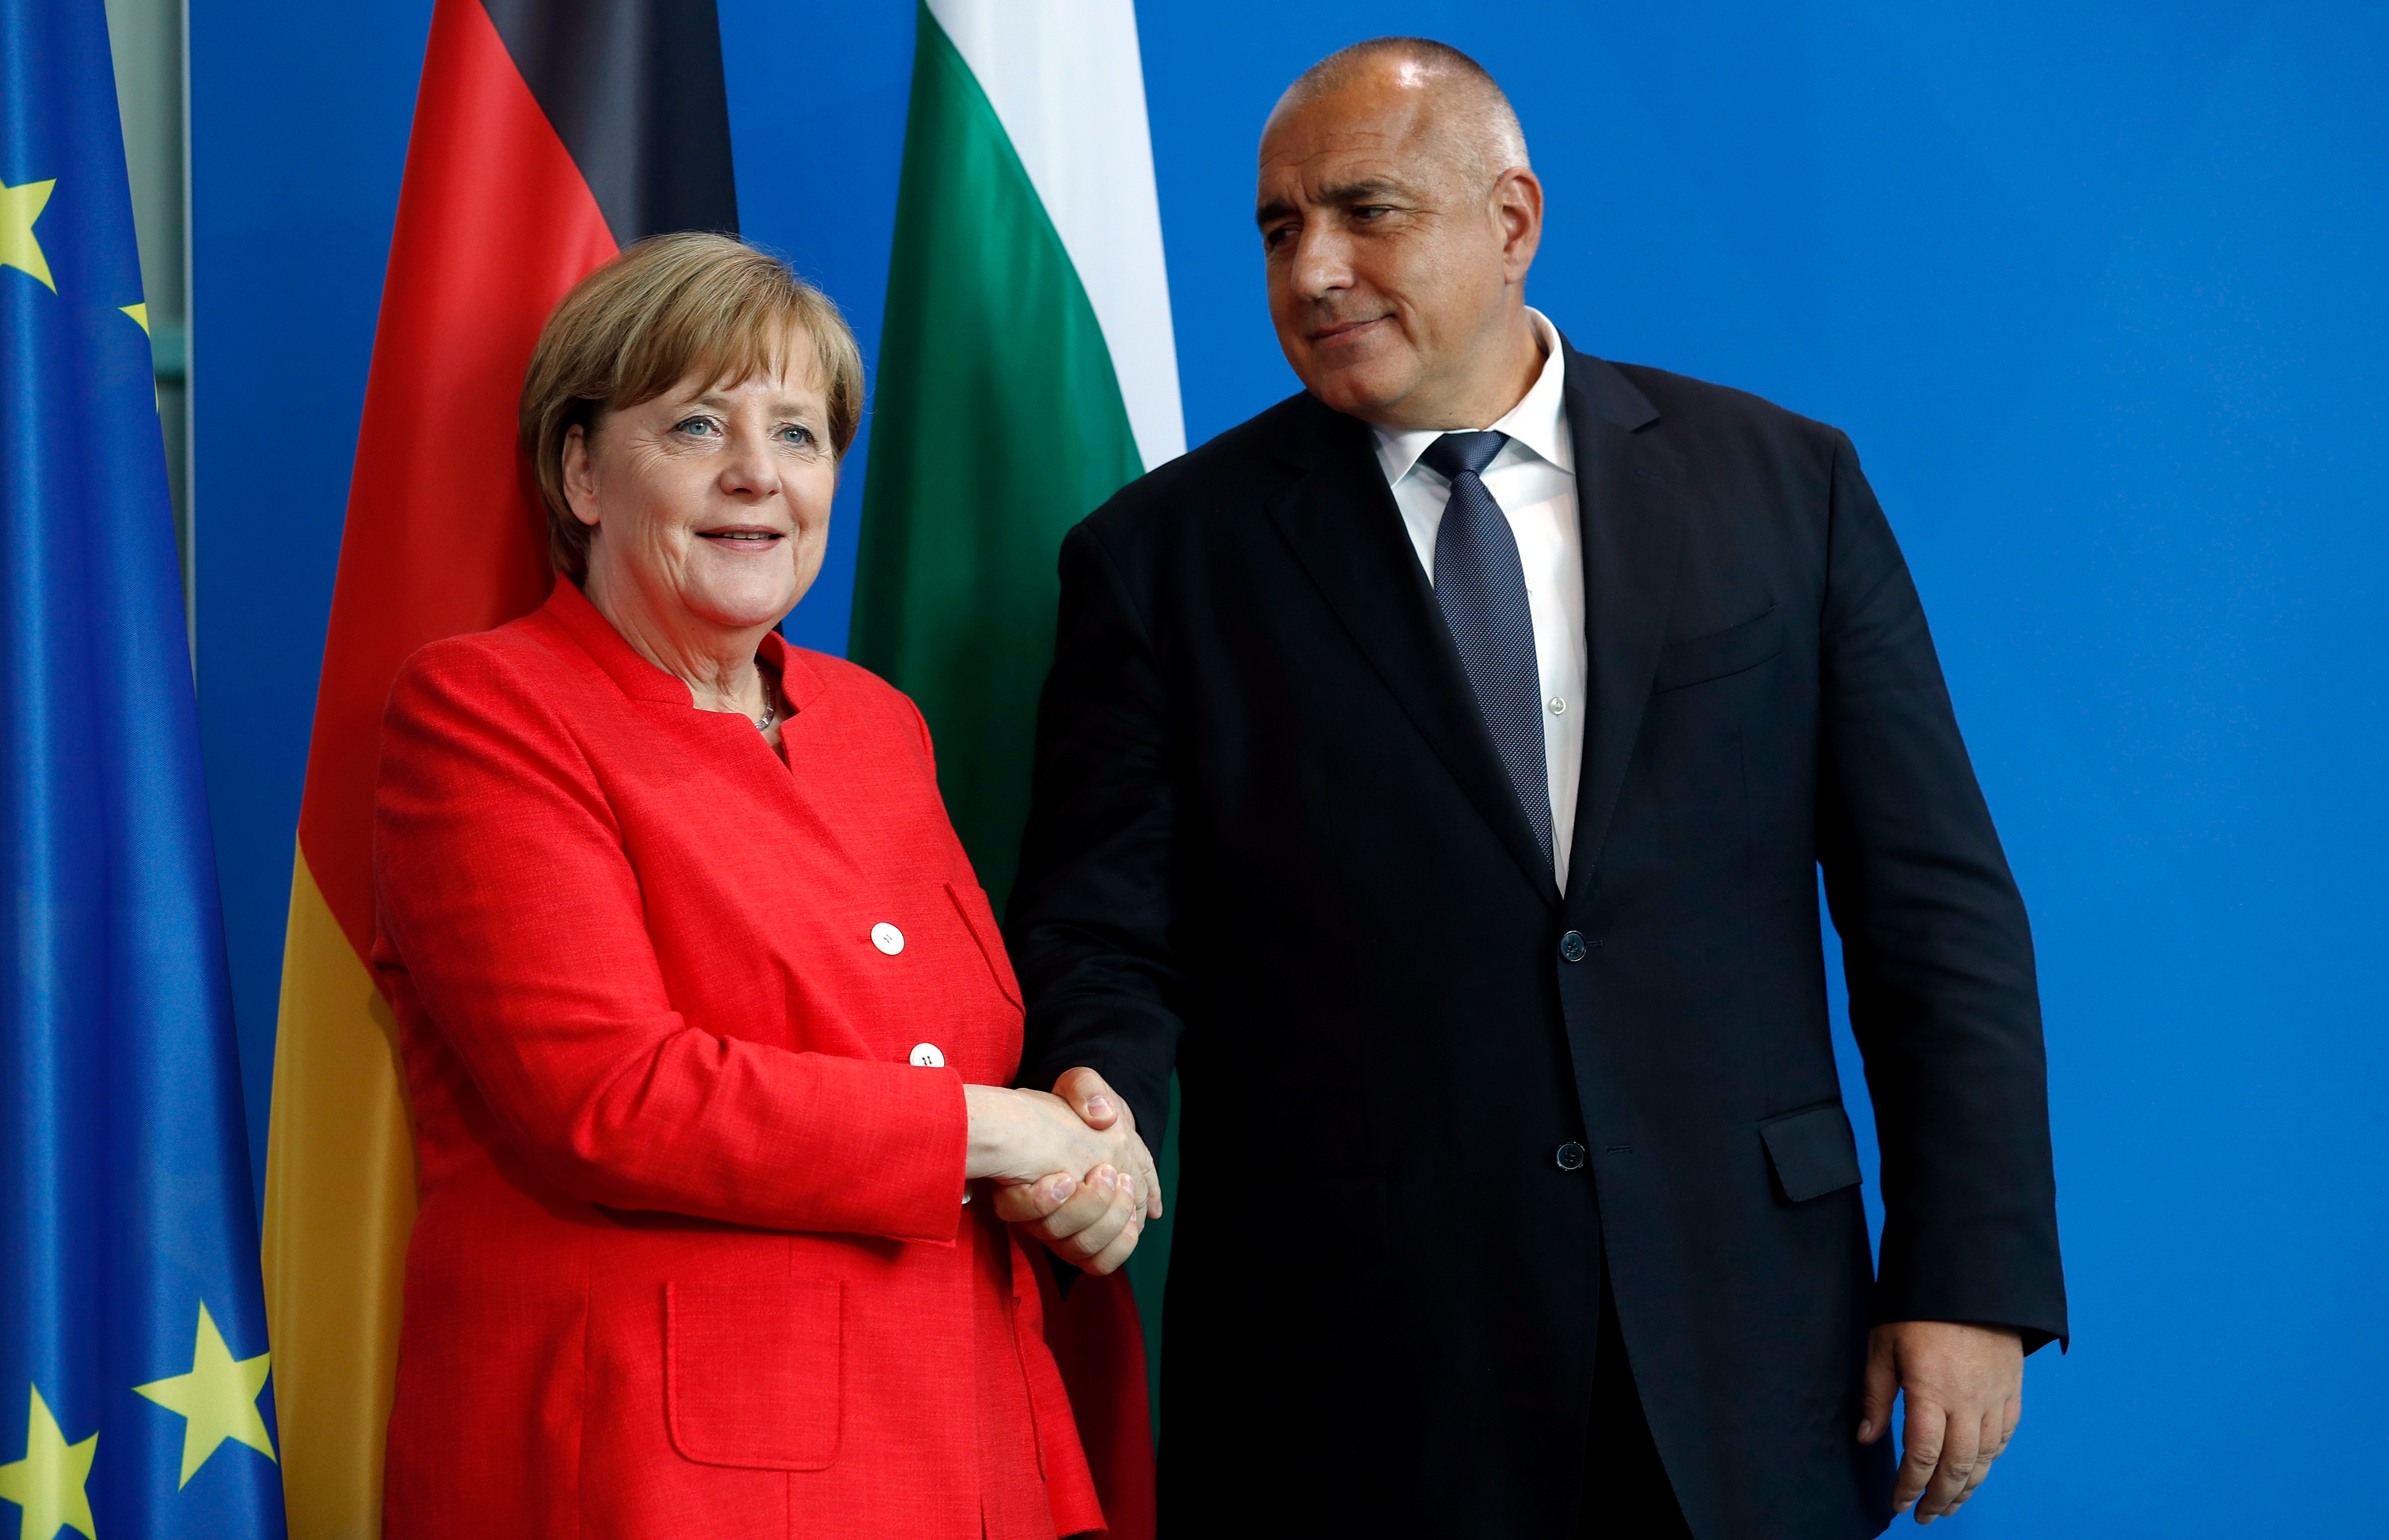 Българският премиер Бойко Борисов и германският канцлер Ангела Меркел се срещнаха в Берлин и обсъдиха редица важни въпроси, сред които миграцията и предстоящото председателство на Съвета на ЕС, което се поема от страната ни от 2018 г.